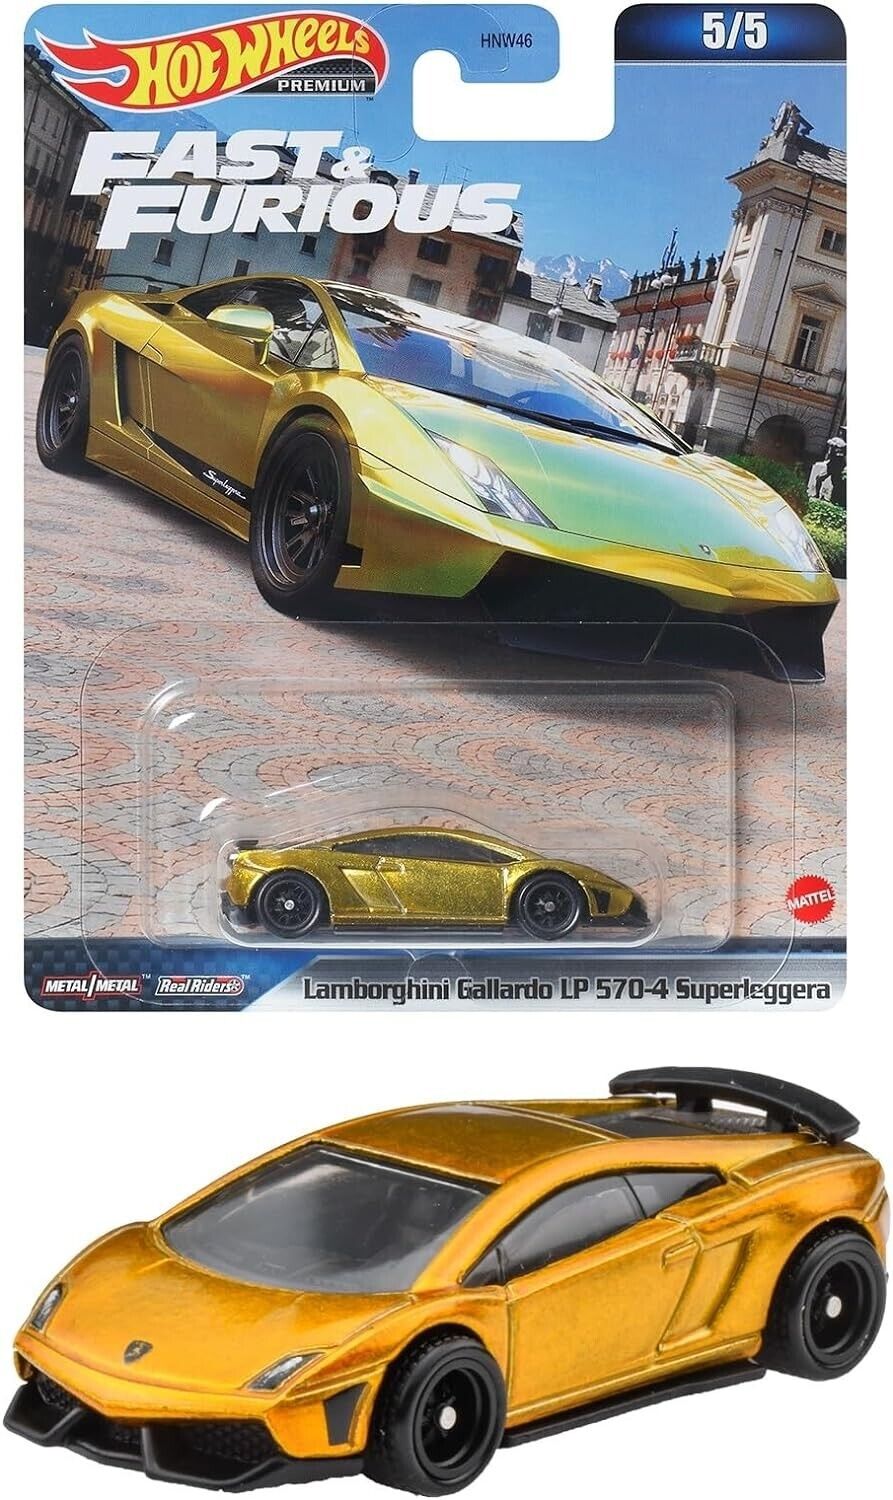 2023 Hot Wheels Premium Fast & Furious Lamborghini Gallardo LP 570-4 Superleggera 5/5